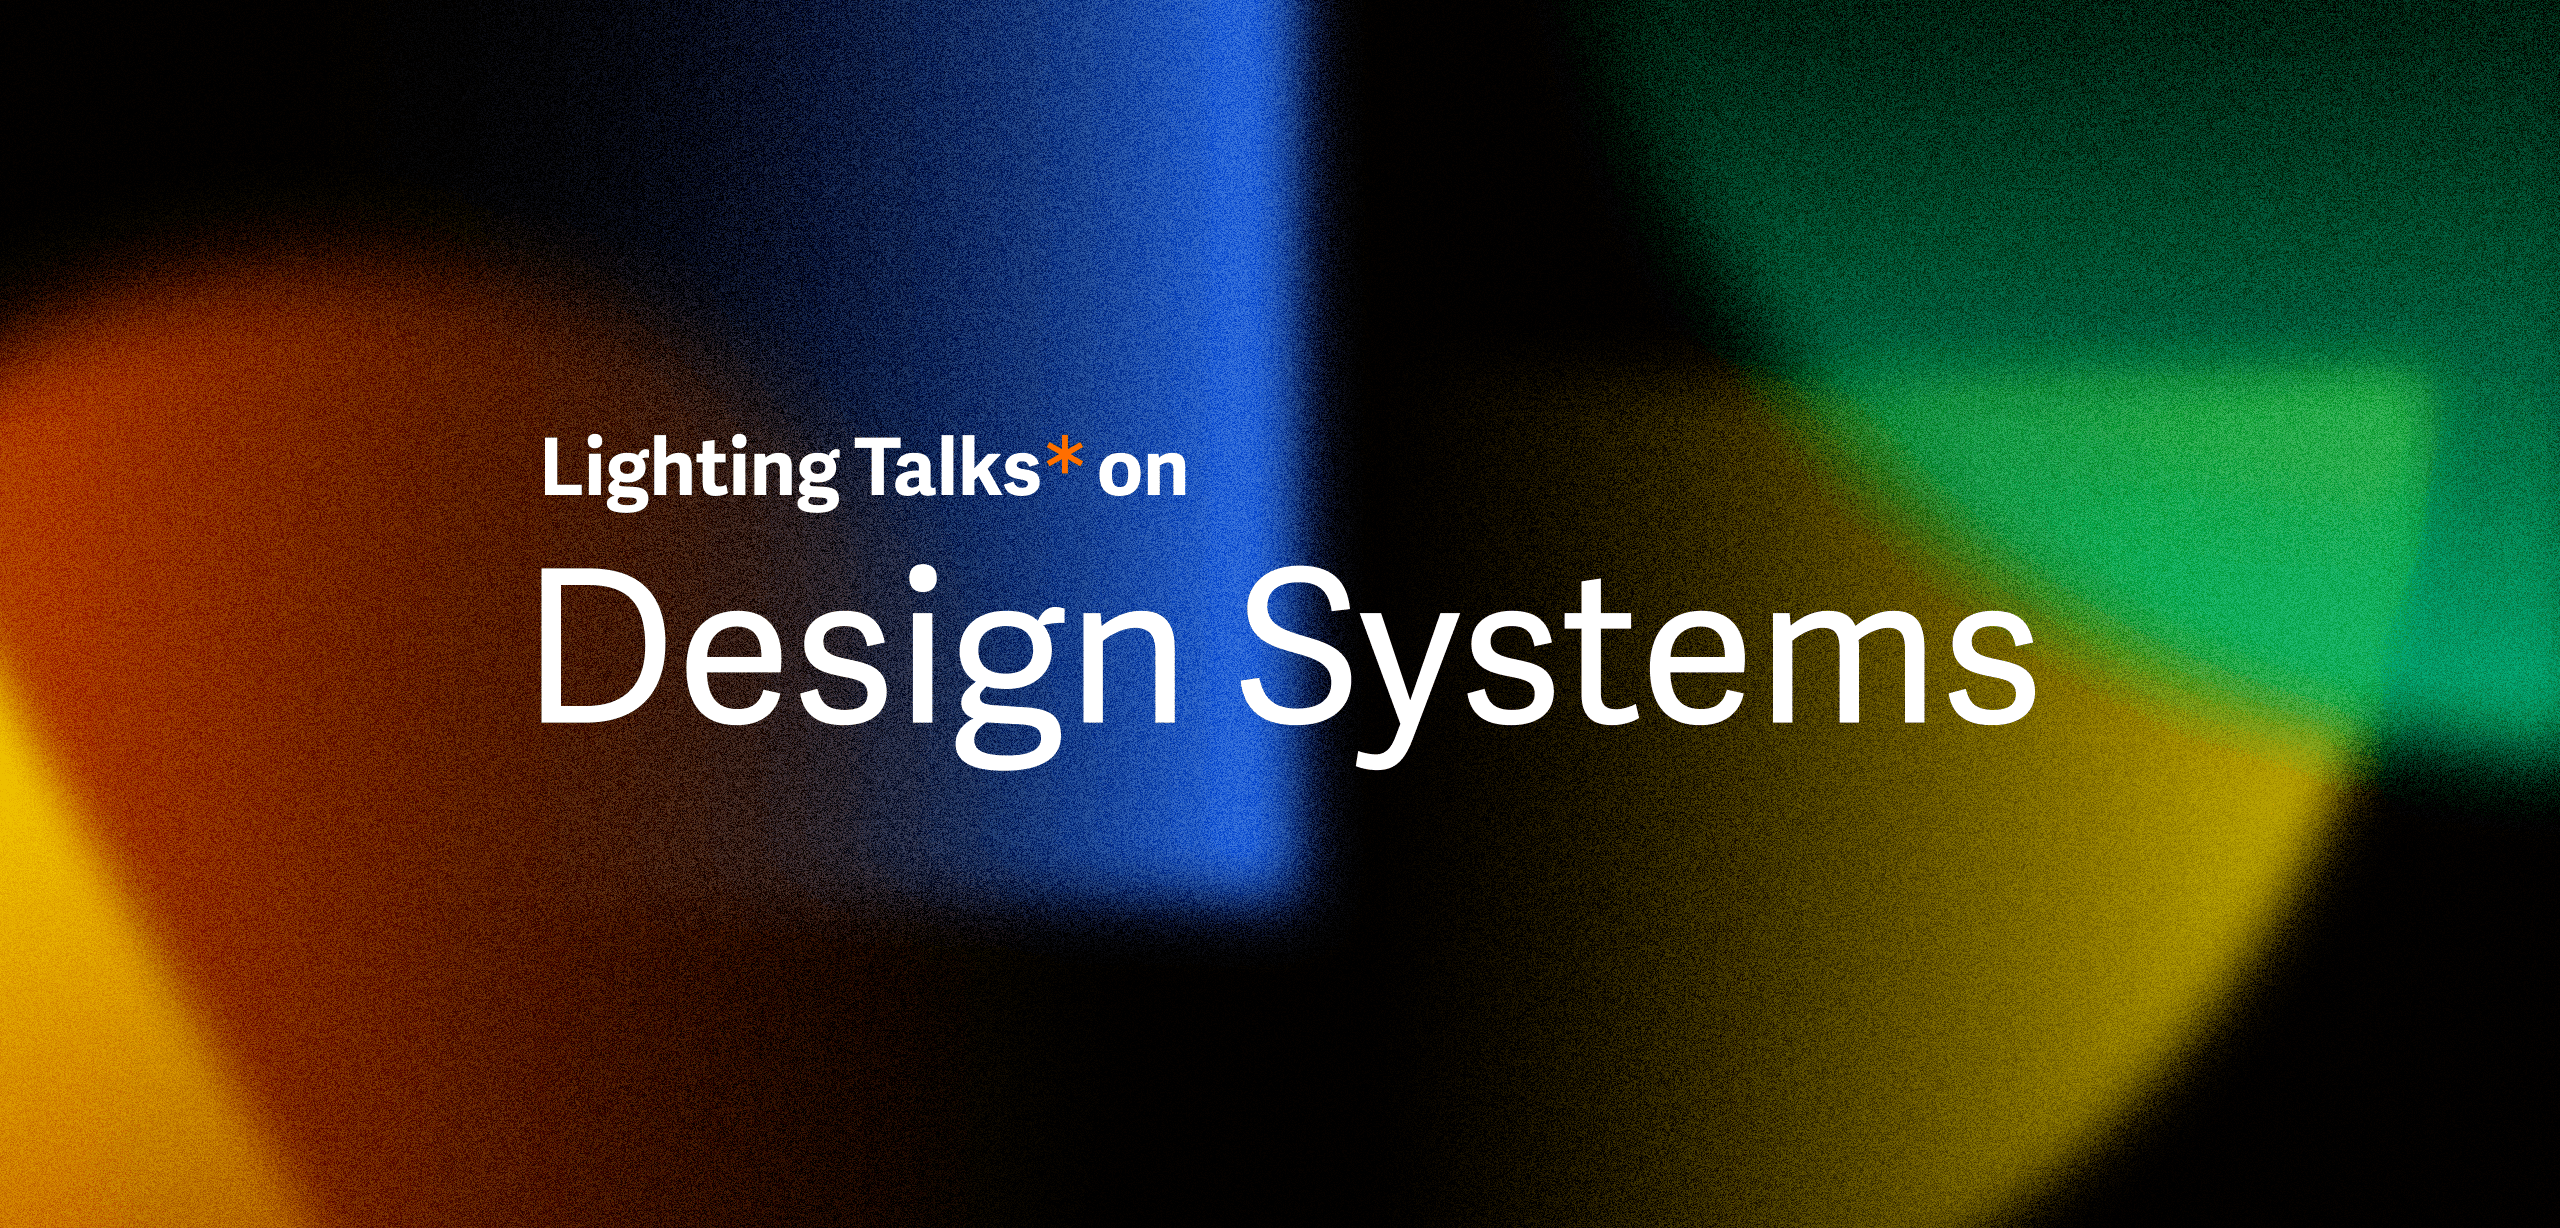 Lighting Talks* o dizajn systémoch